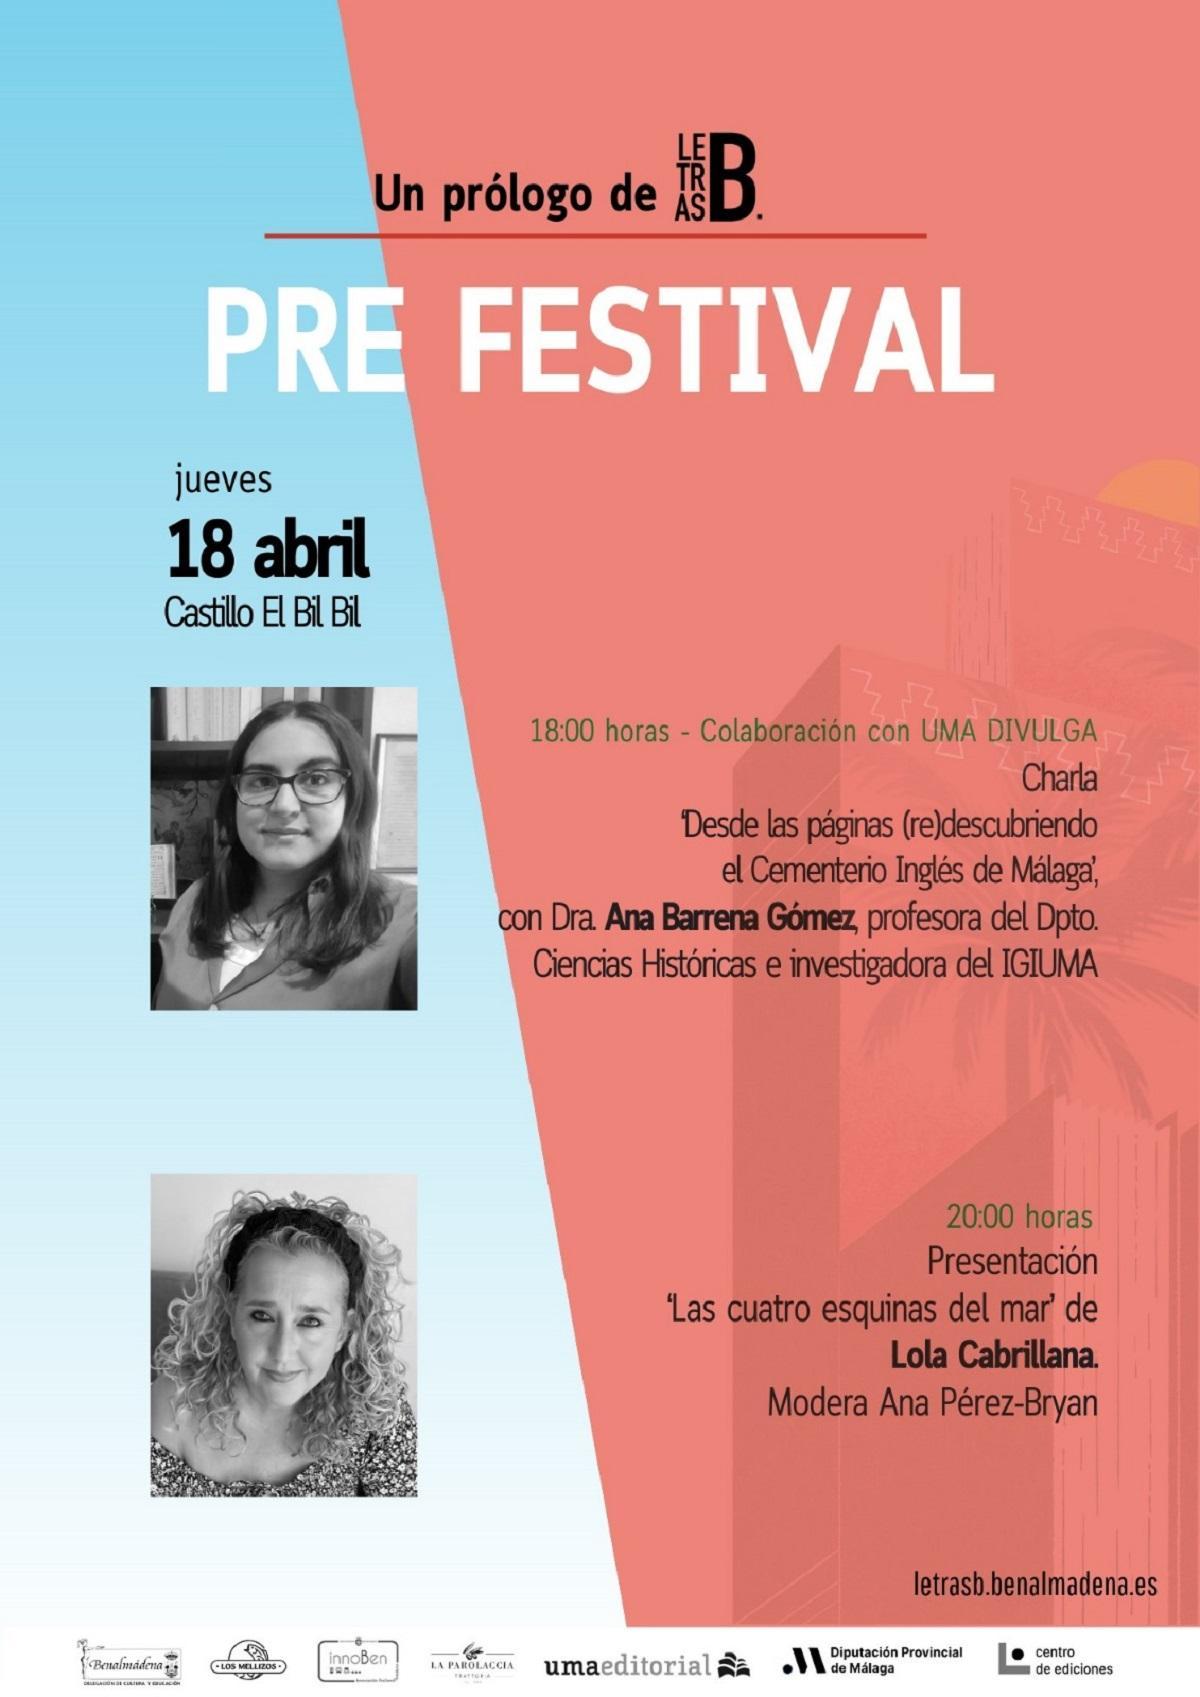 El festival tiene su preámbulo este jueves con la doctora Ana y la escritora Lola Cabrillana.